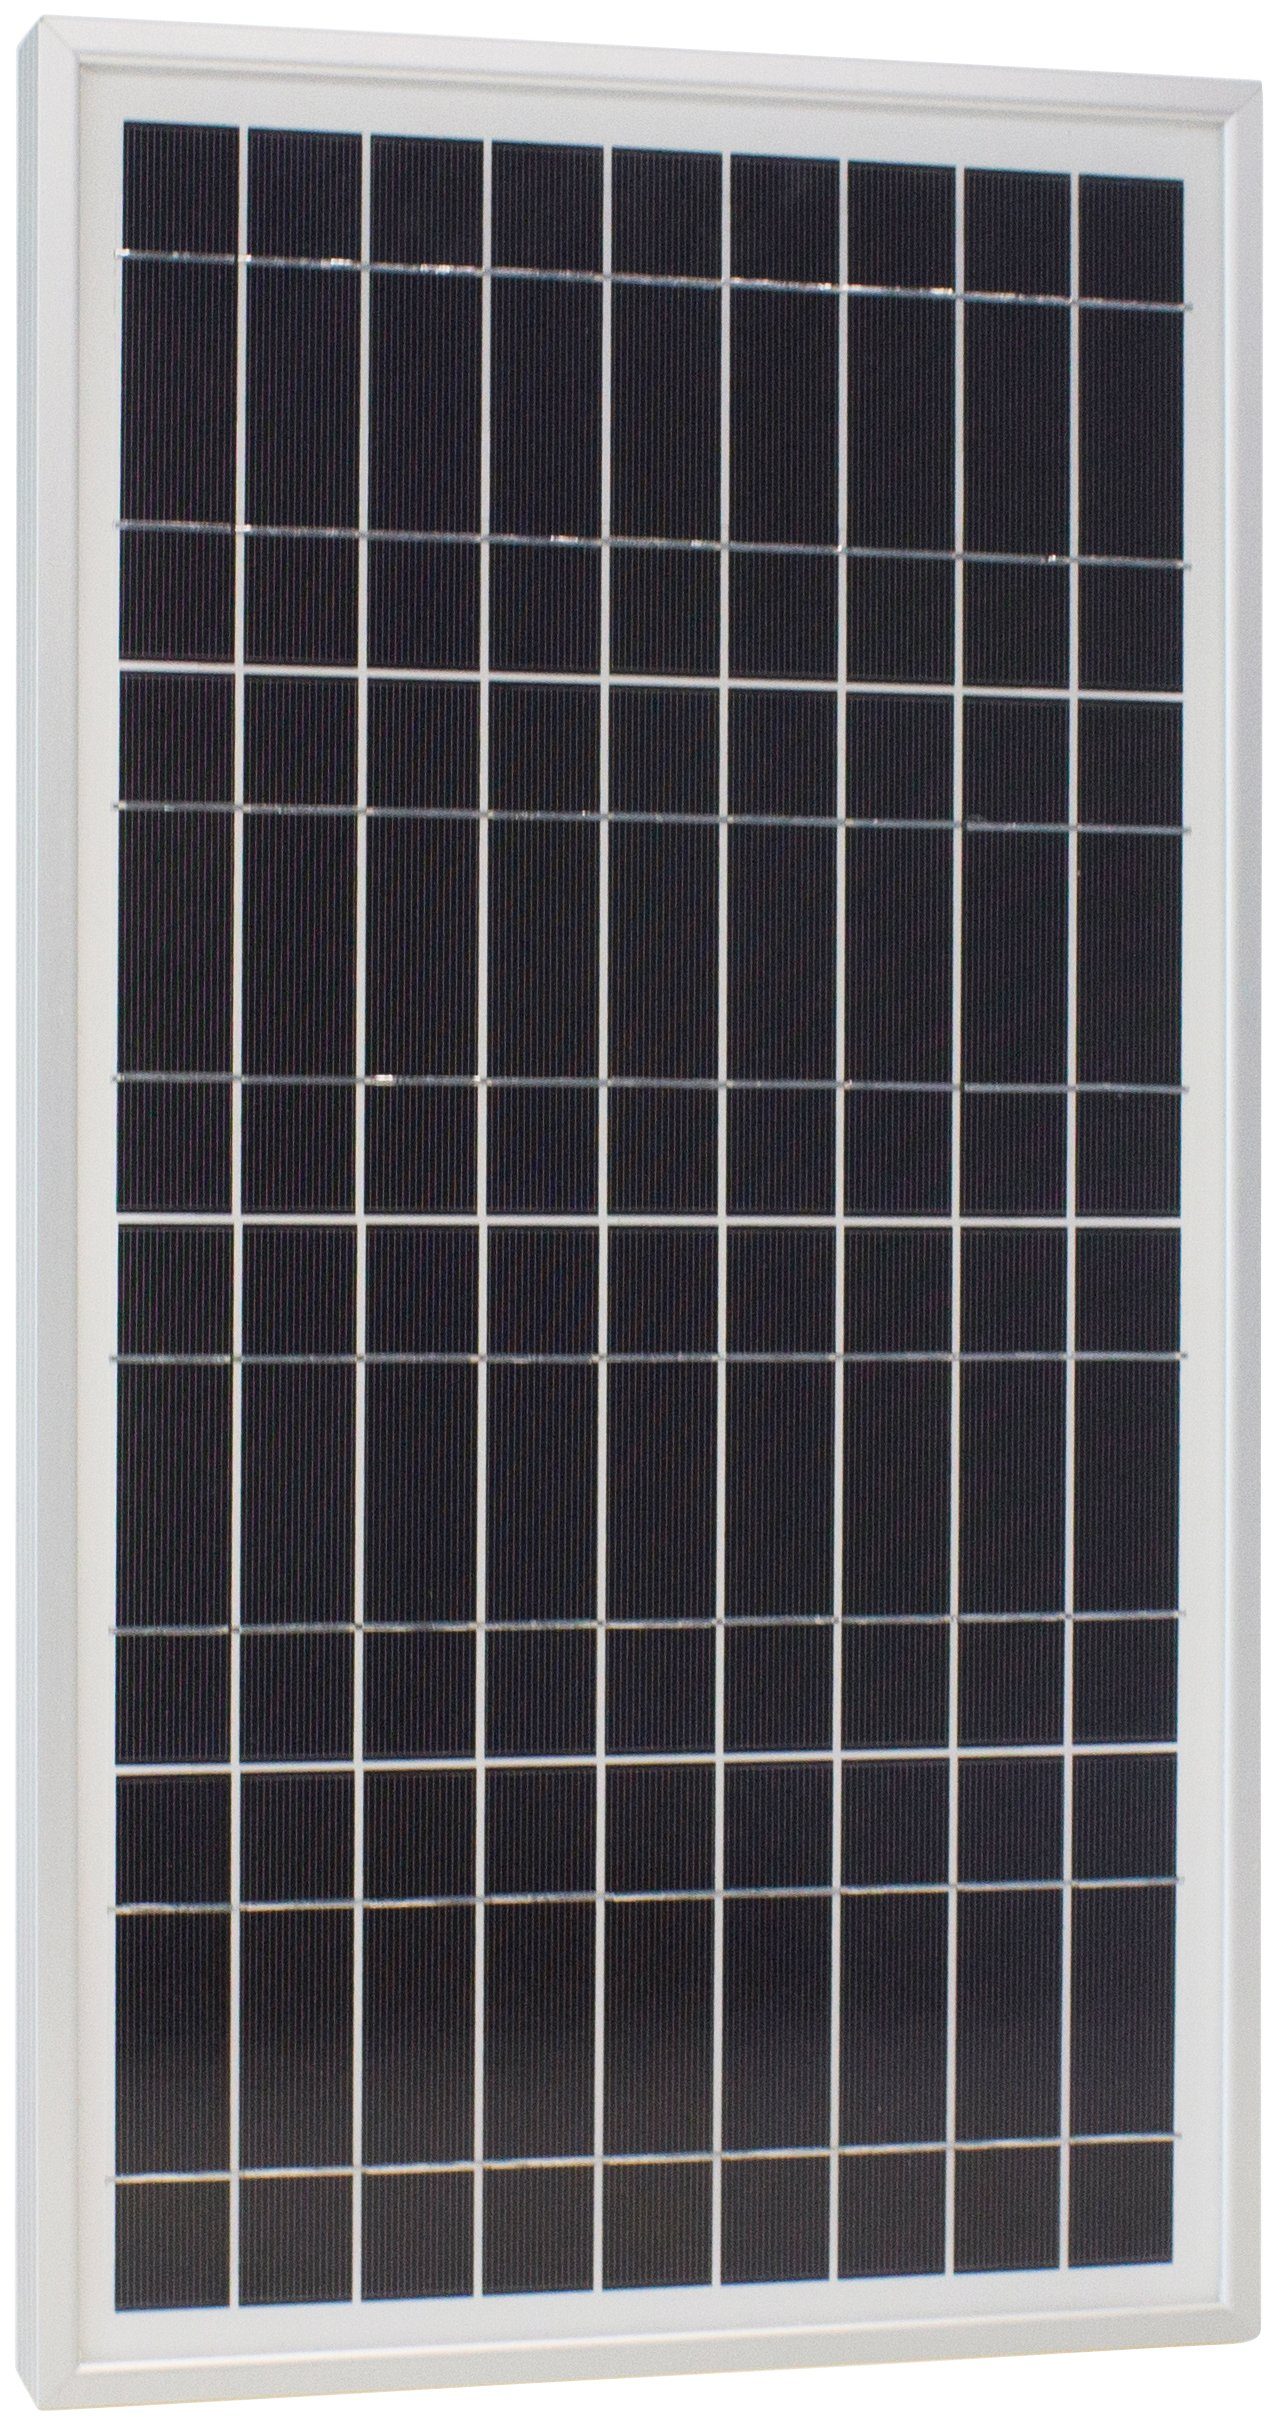 Phaesun Solarmodul Sun Plus S, IP65 12 W, Schutz VDC, 20 20